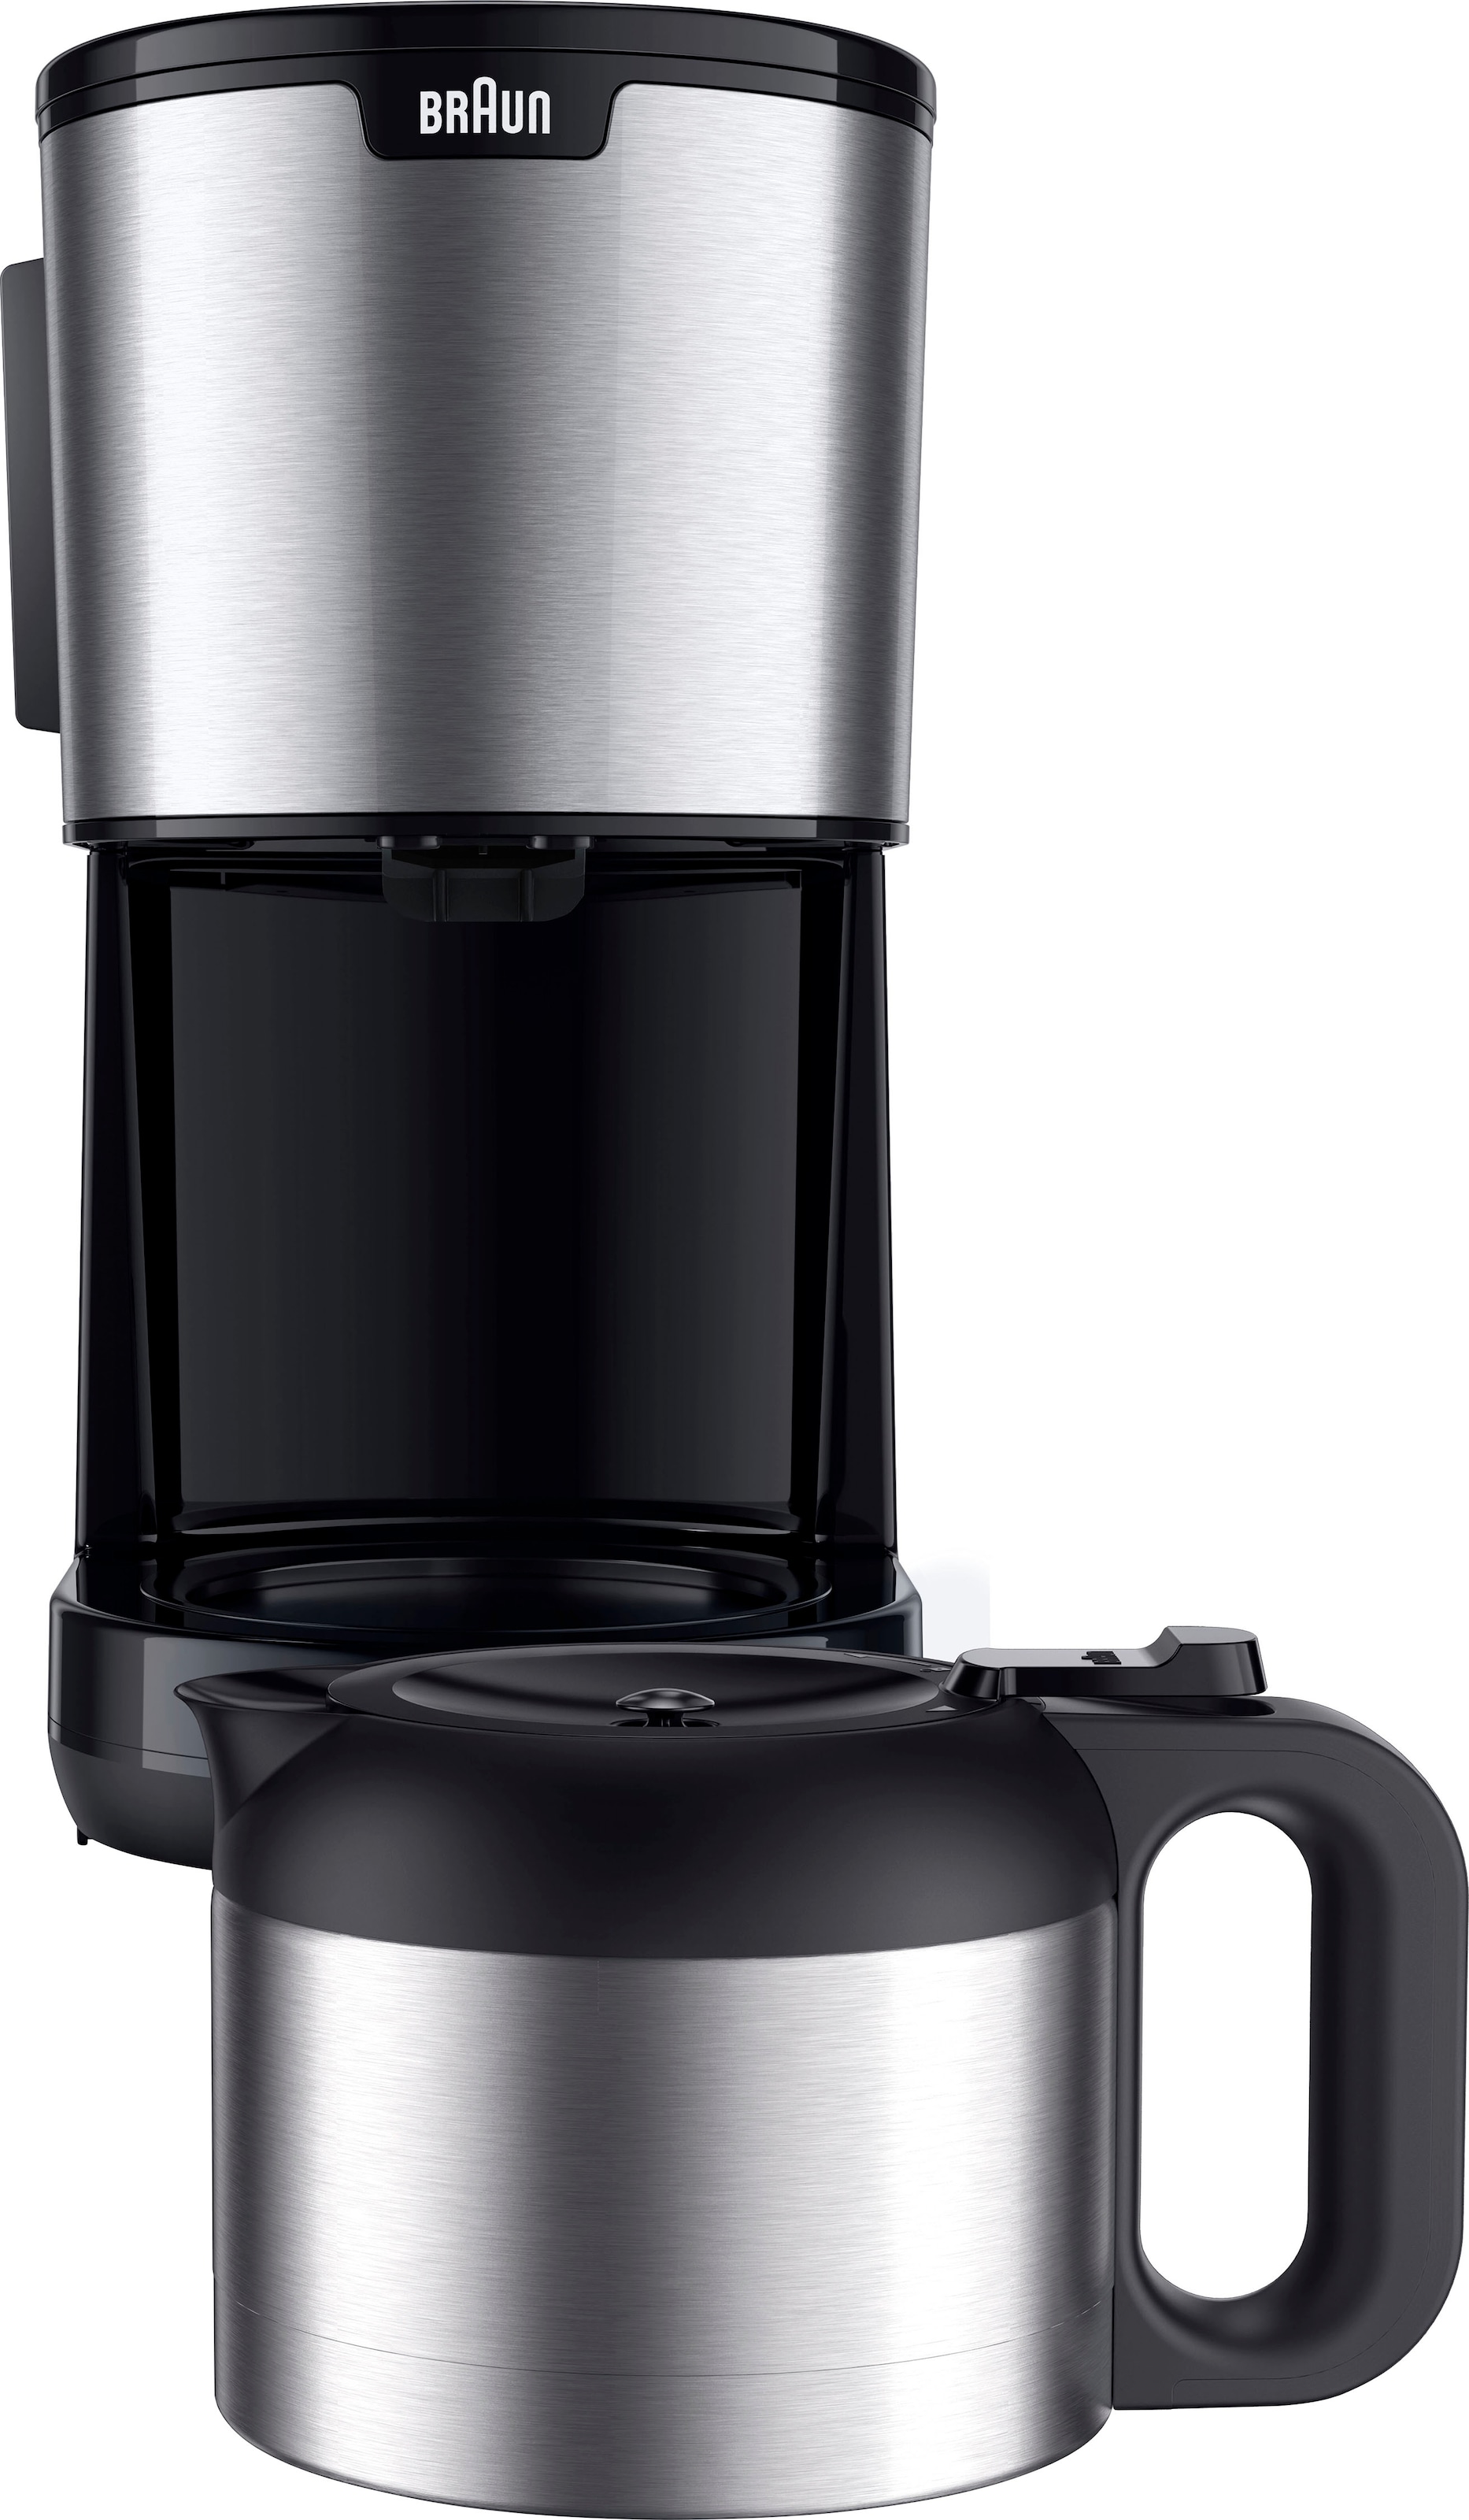 Braun Filterkaffeemaschine »PurShine KF1505 BK«, 1,2 l Kaffeekanne, Papierfilter, Thermokanne schwarz